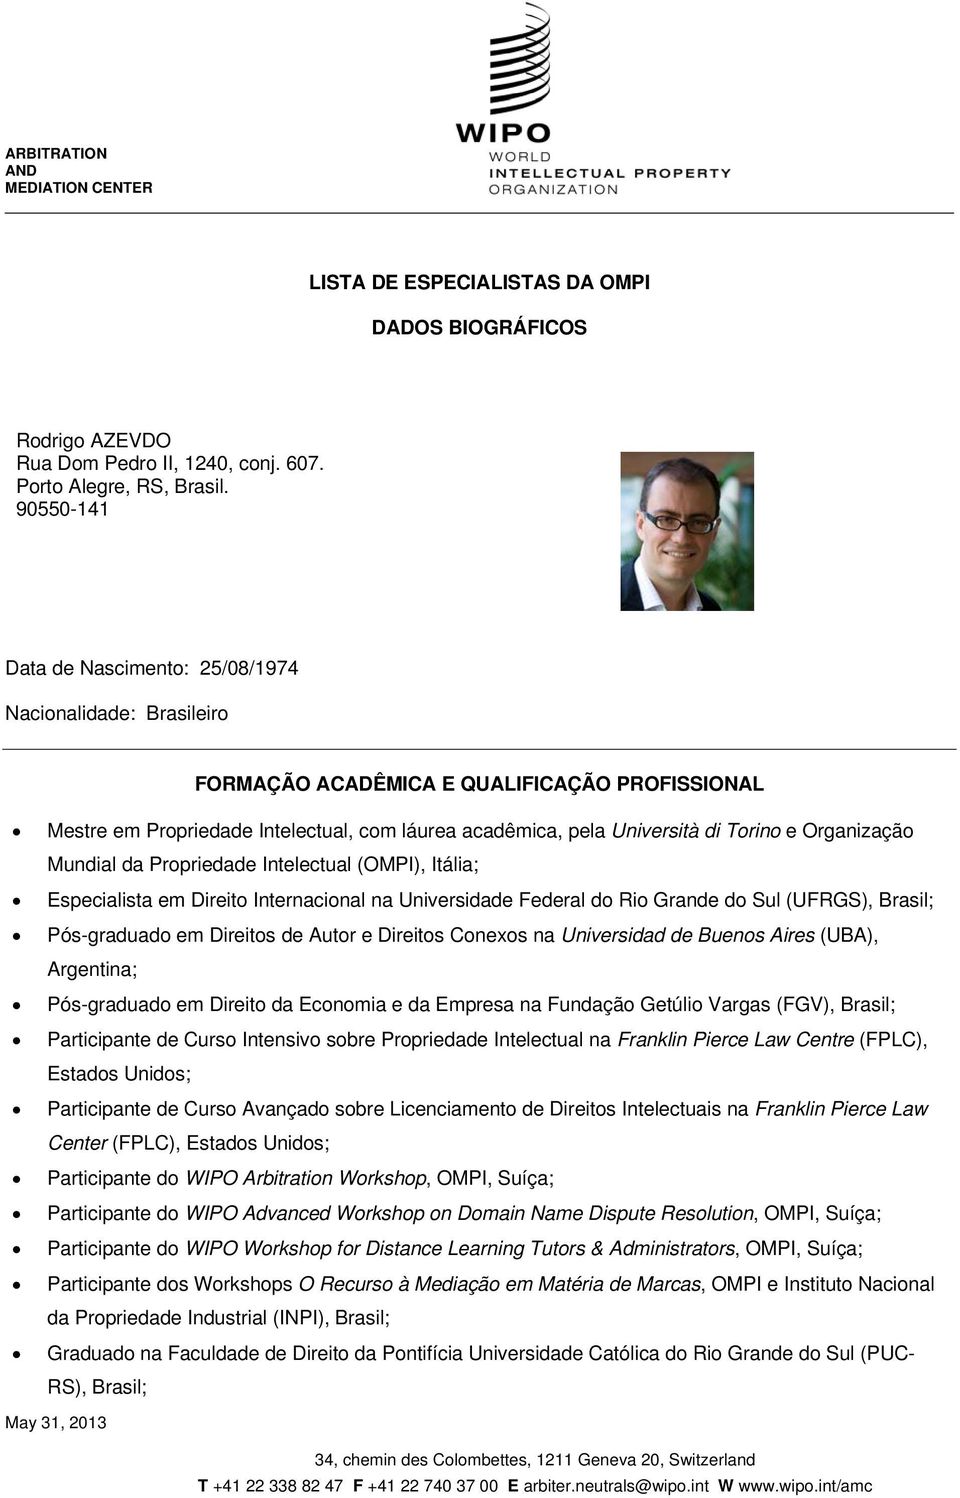 Organização Mundial da Propriedade Intelectual (OMPI), Itália; Especialista em Direito Internacional na Universidade Federal do Rio Grande do Sul (UFRGS), Brasil; Pós-graduado em Direitos de Autor e